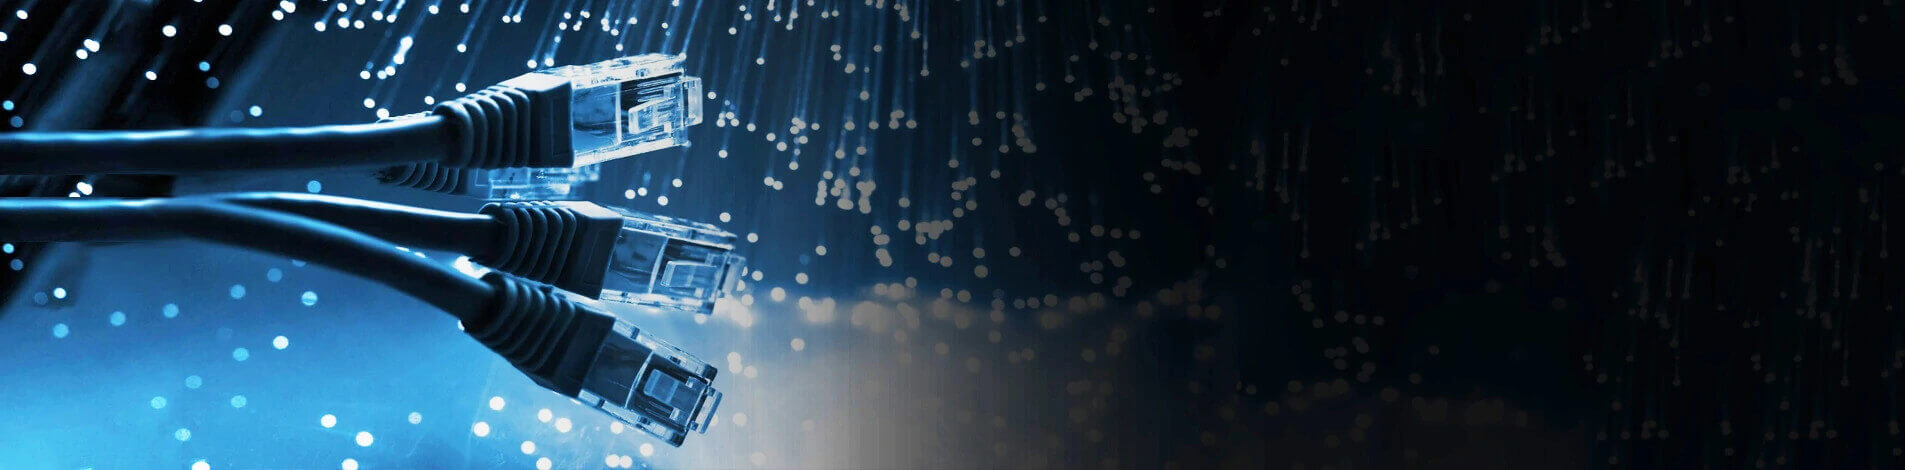 Network cables and fibre optics